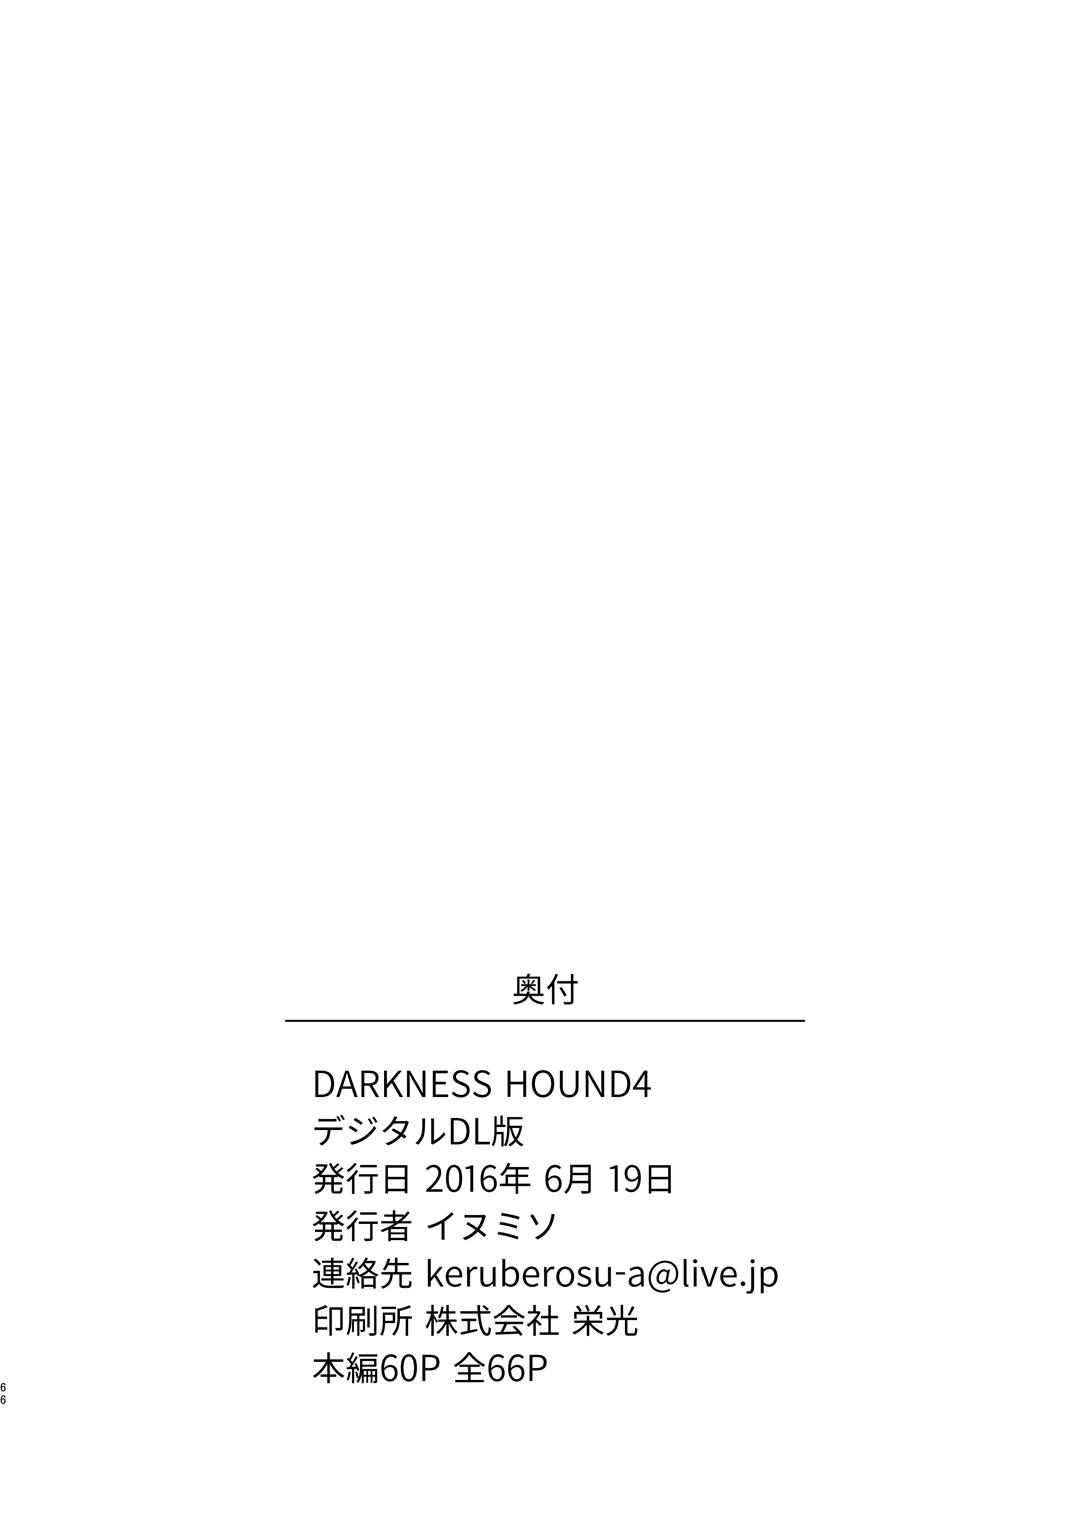 Darkness Hound 4 64